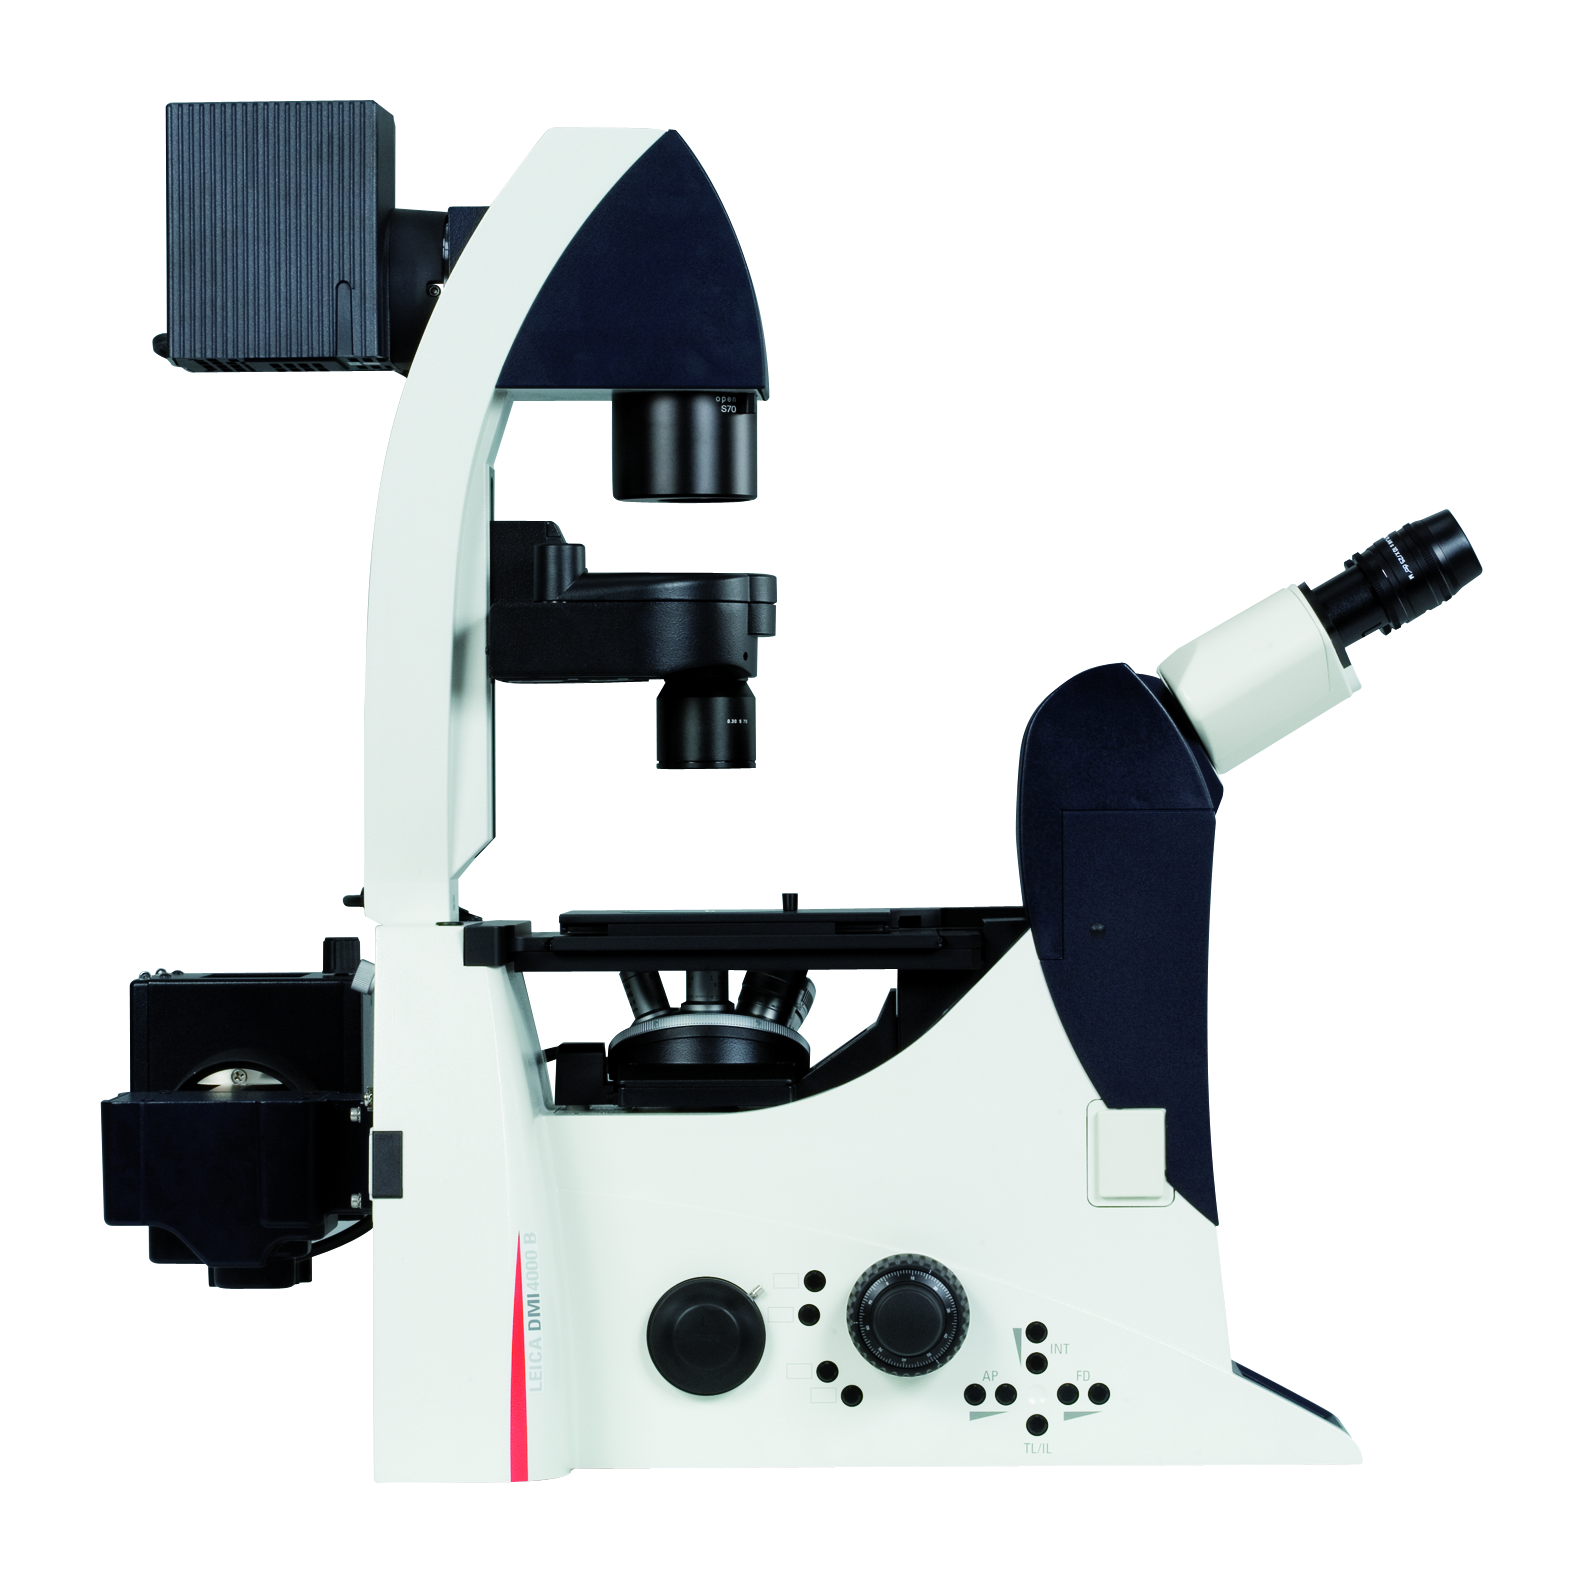 用于生命科学研究的自动倒置显微镜 Leica DMI4000 B